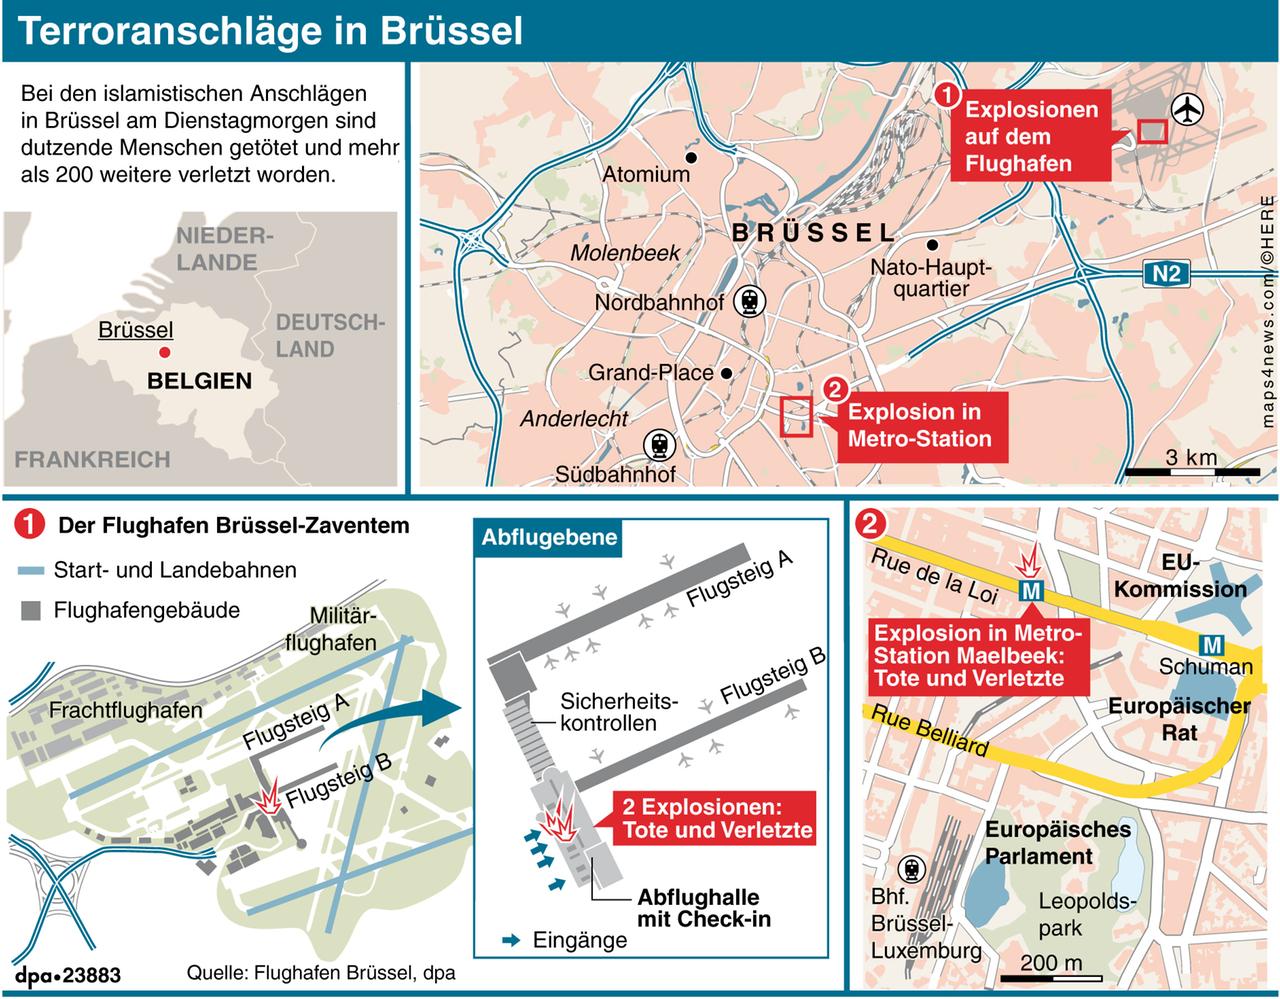 Übersichtsgrafik zu den Terroranschlägen in Brüssel vom 22.03.2016.